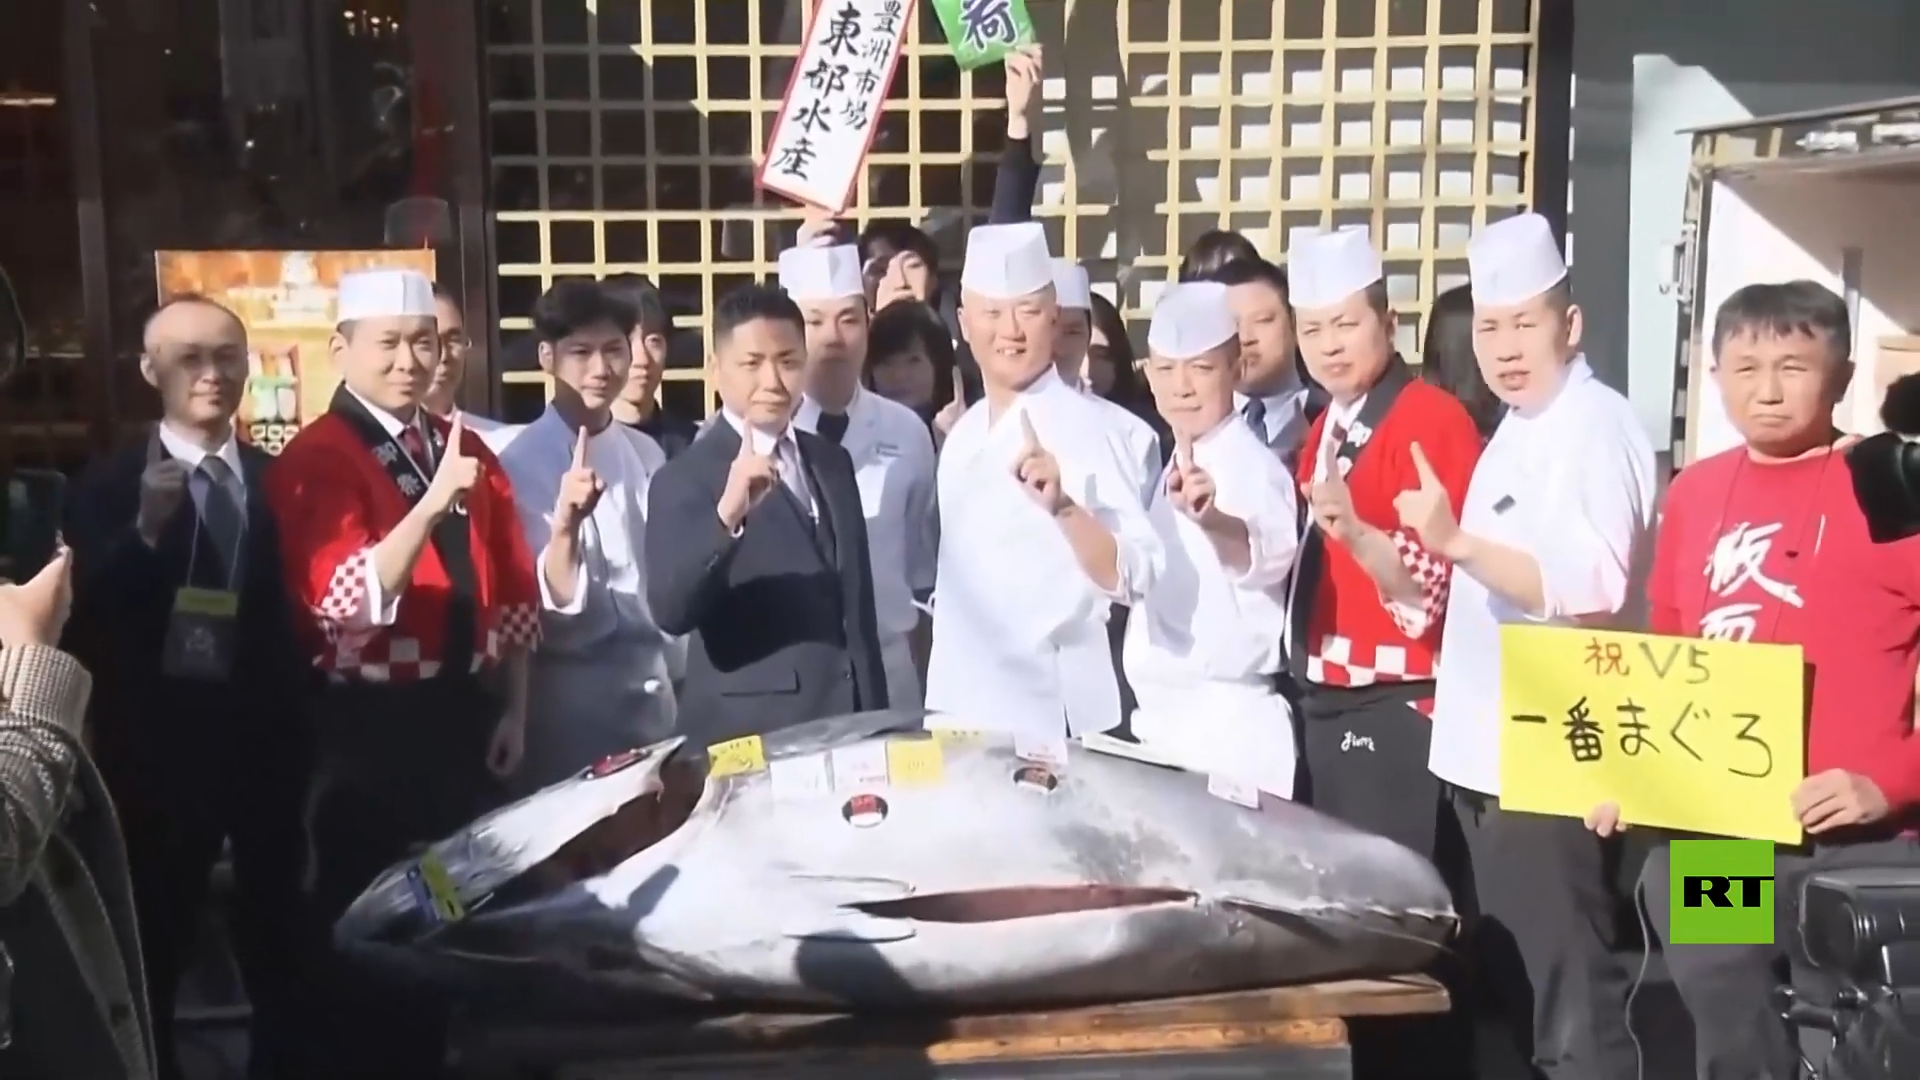 شاهد.. بيع سمكة تونة بـ800 ألف دولار في مزاد رأس السنة بطوكيو